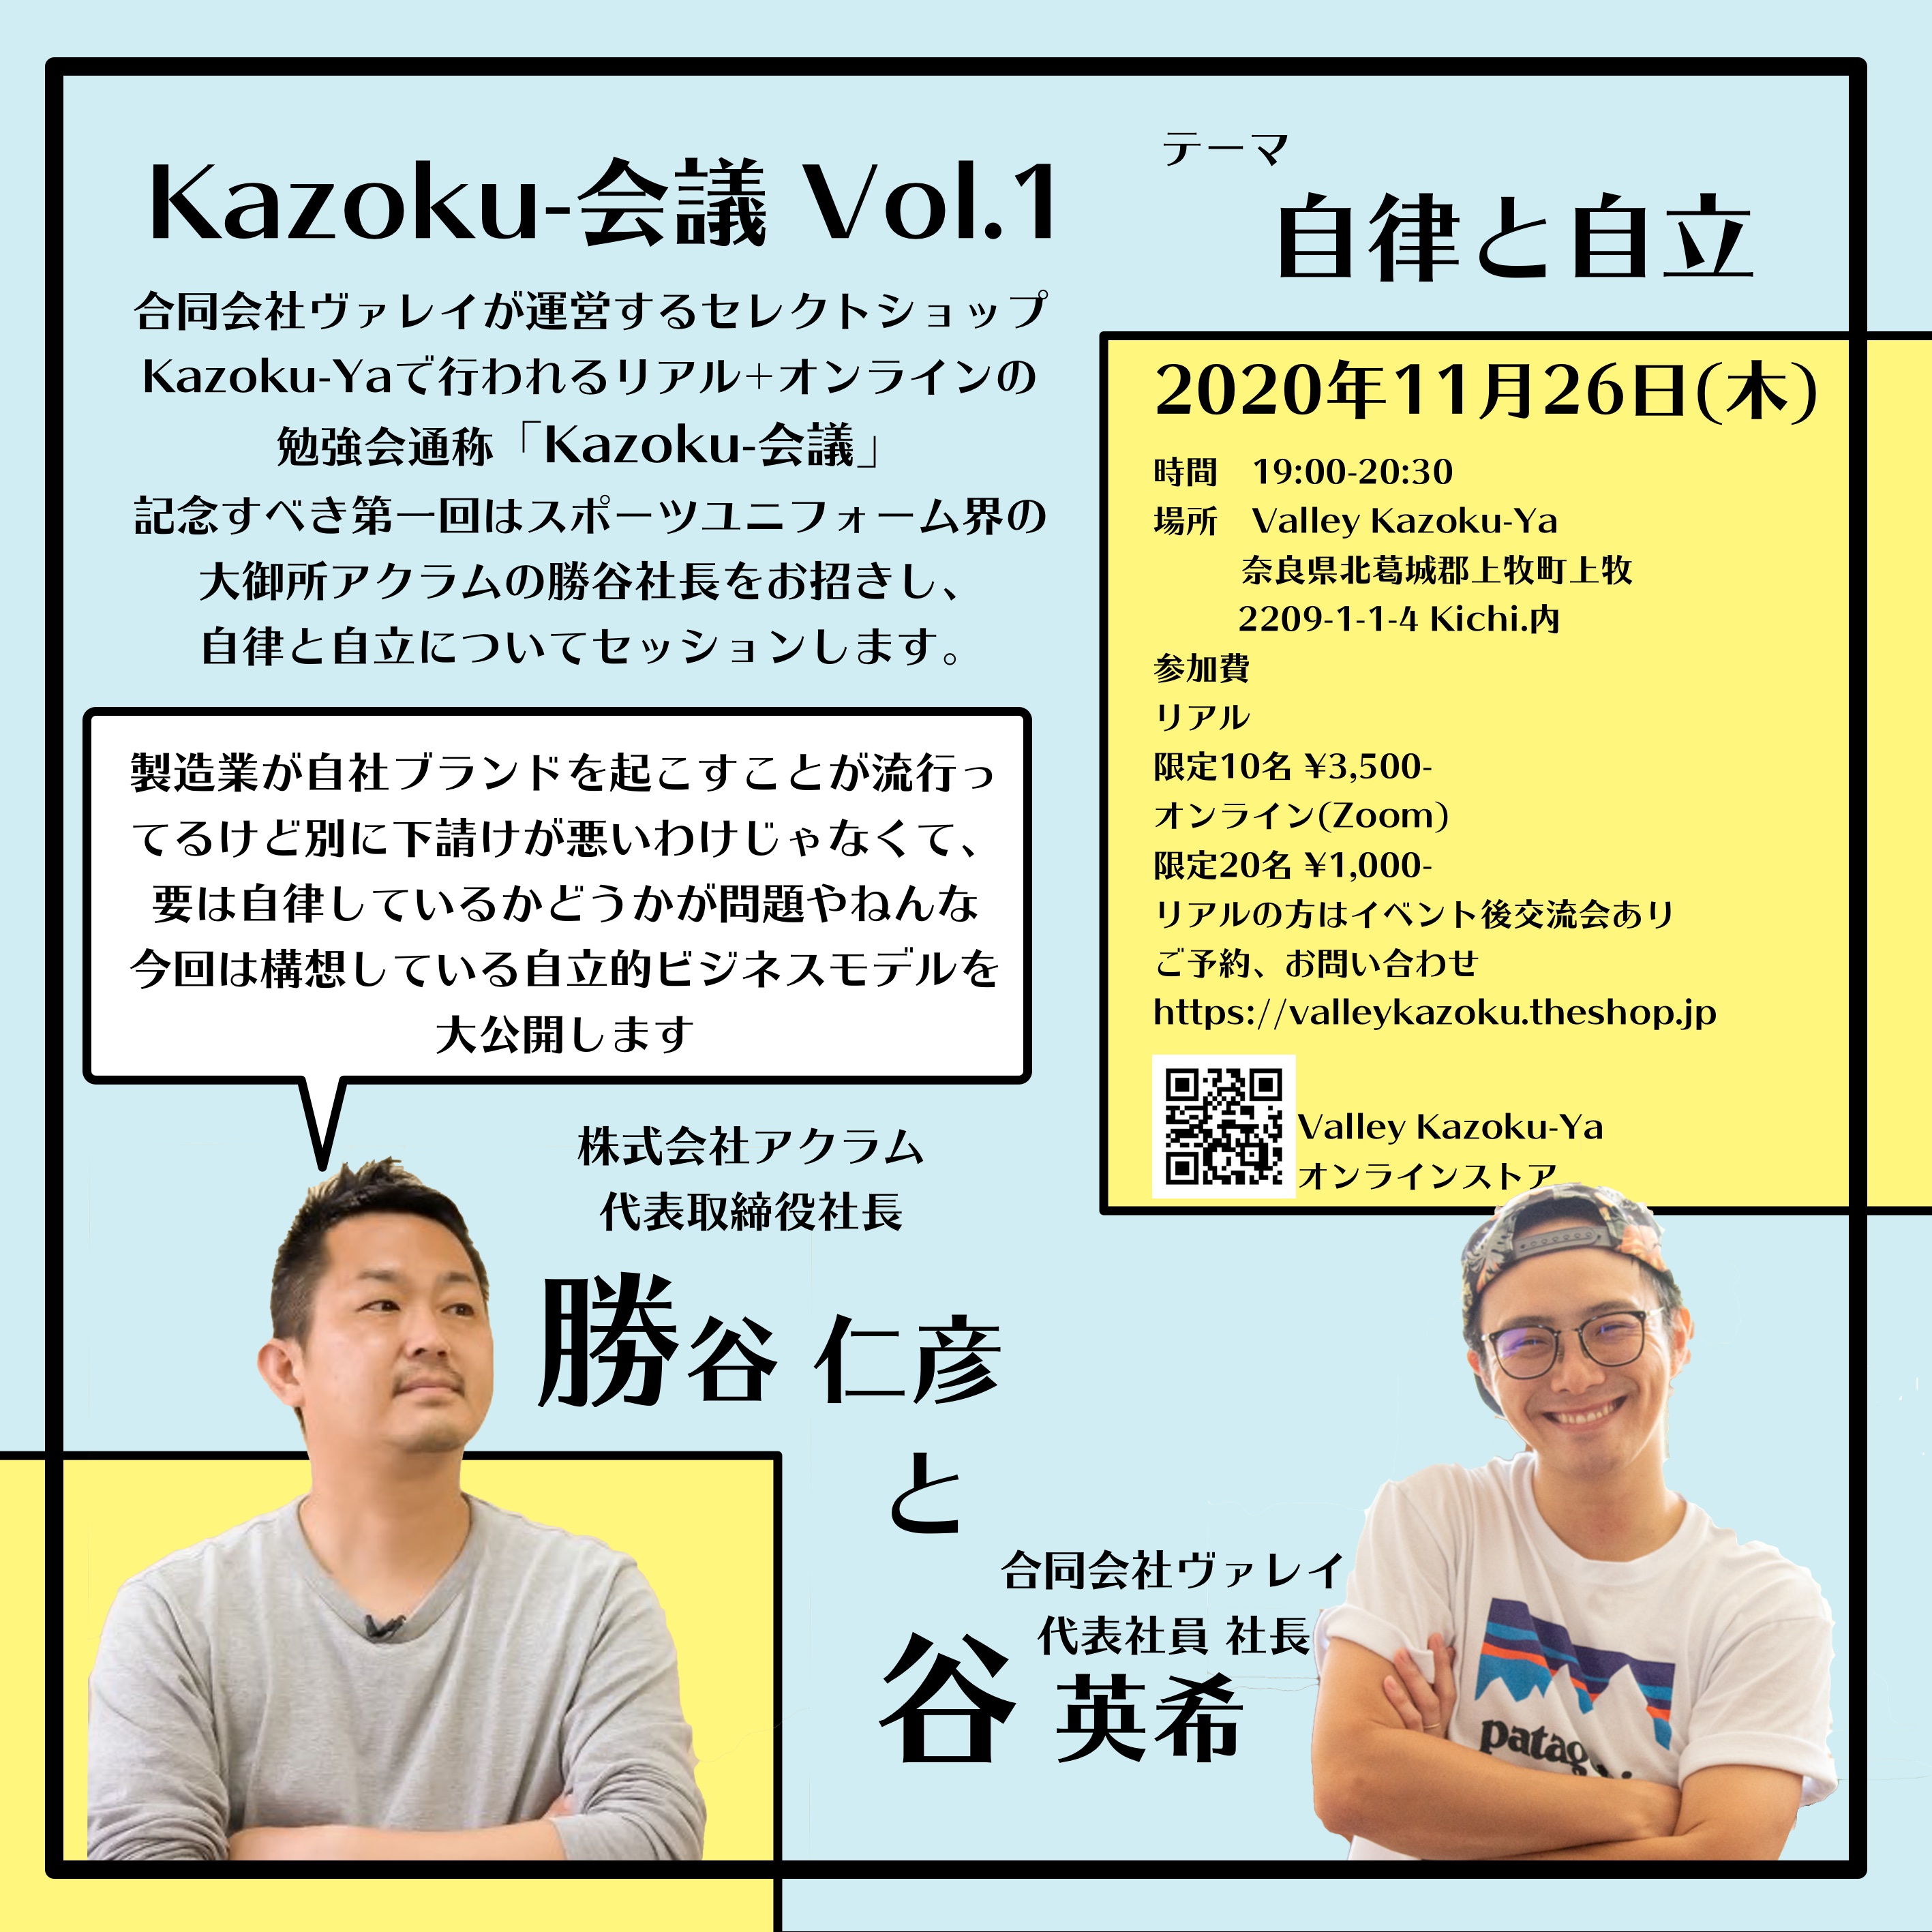 「学び」の販売始めました【Kazoku-会議 Vol.1】